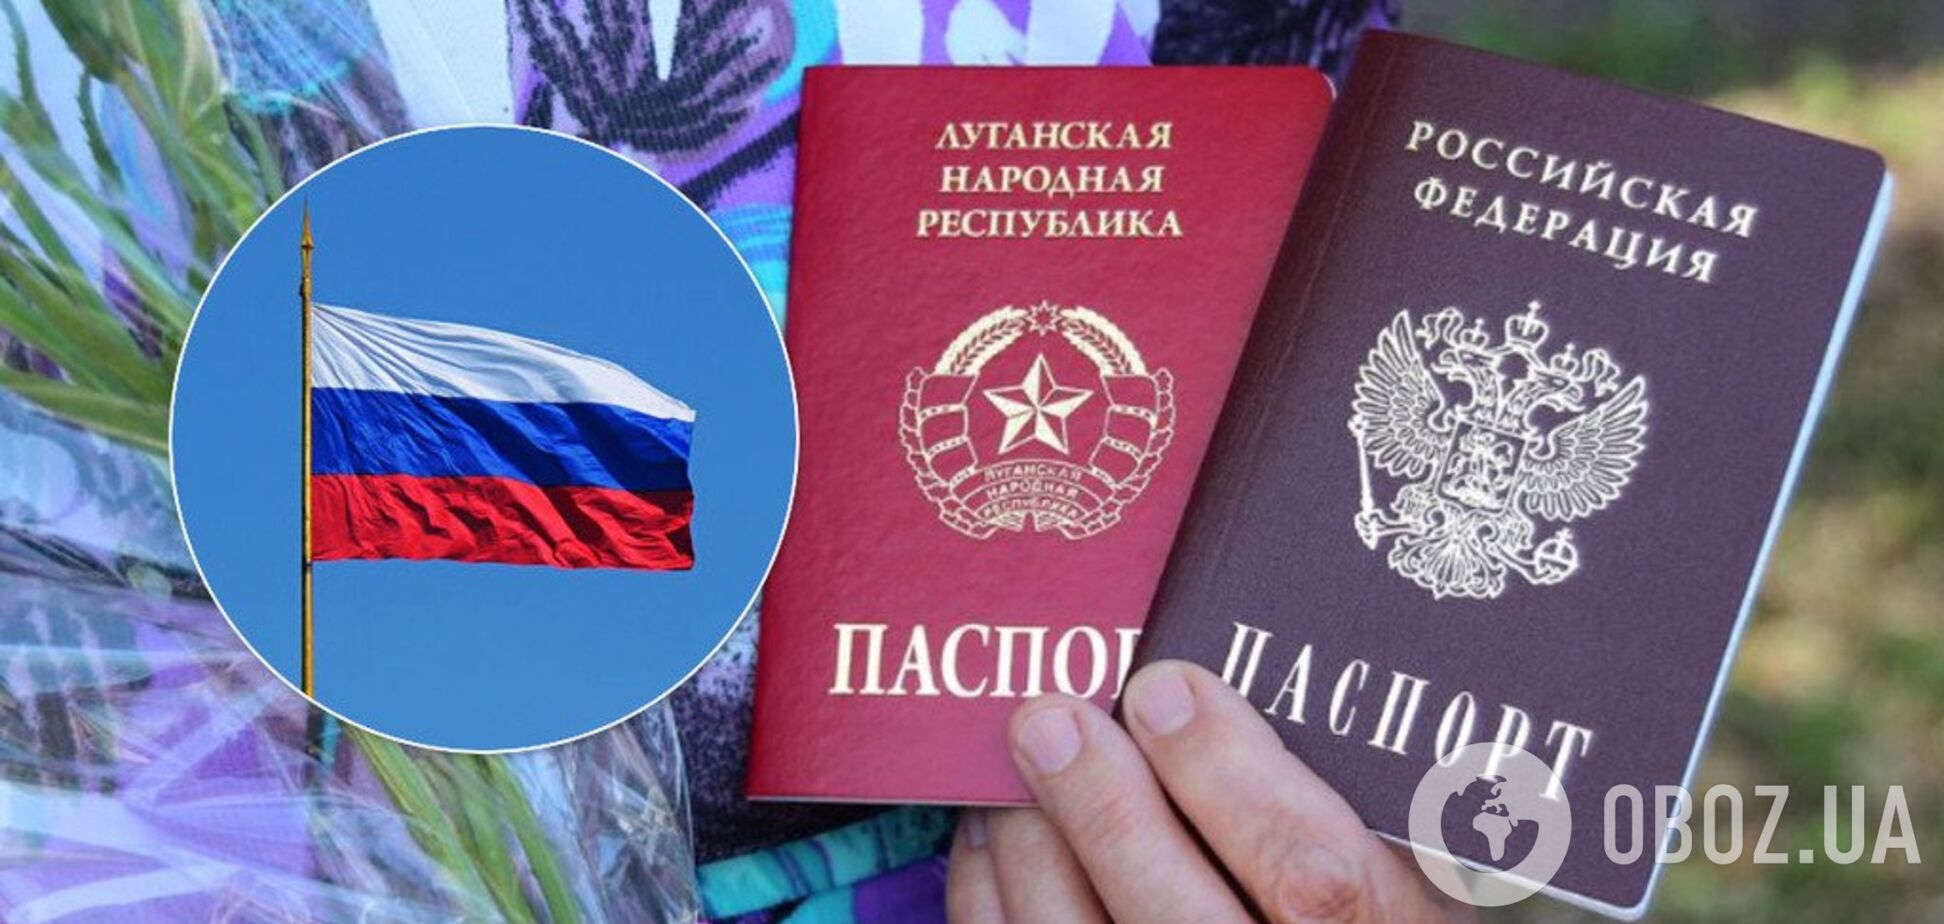 'Погрози не налякають!' Росія знову розгнівалася через паспорти для 'ДНР' і 'ЛНР'